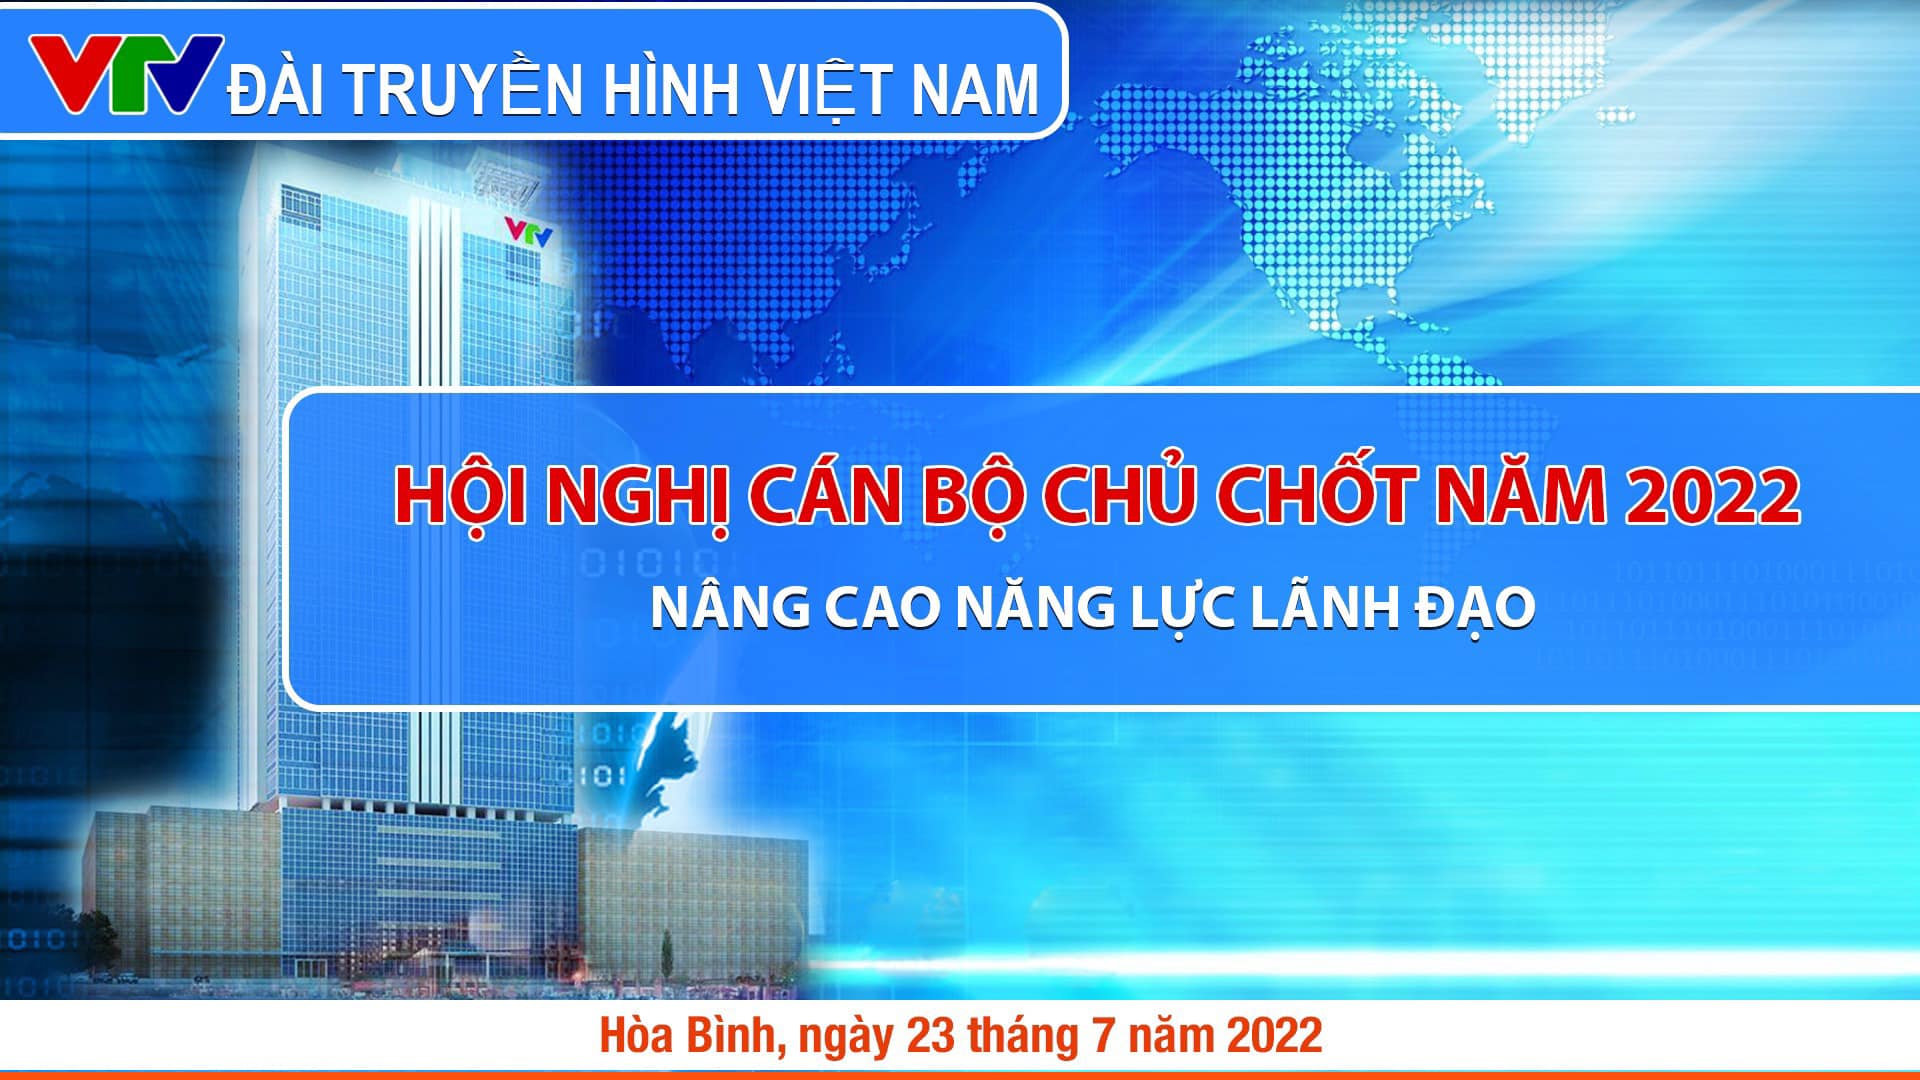 HỘI NGHỊ CÁN BỘ CHỦ CHỐT NĂM 2022 -  Nâng cao năng lực lãnh đạo  của Đài Truyền Hình Việt Nam (VTV) 